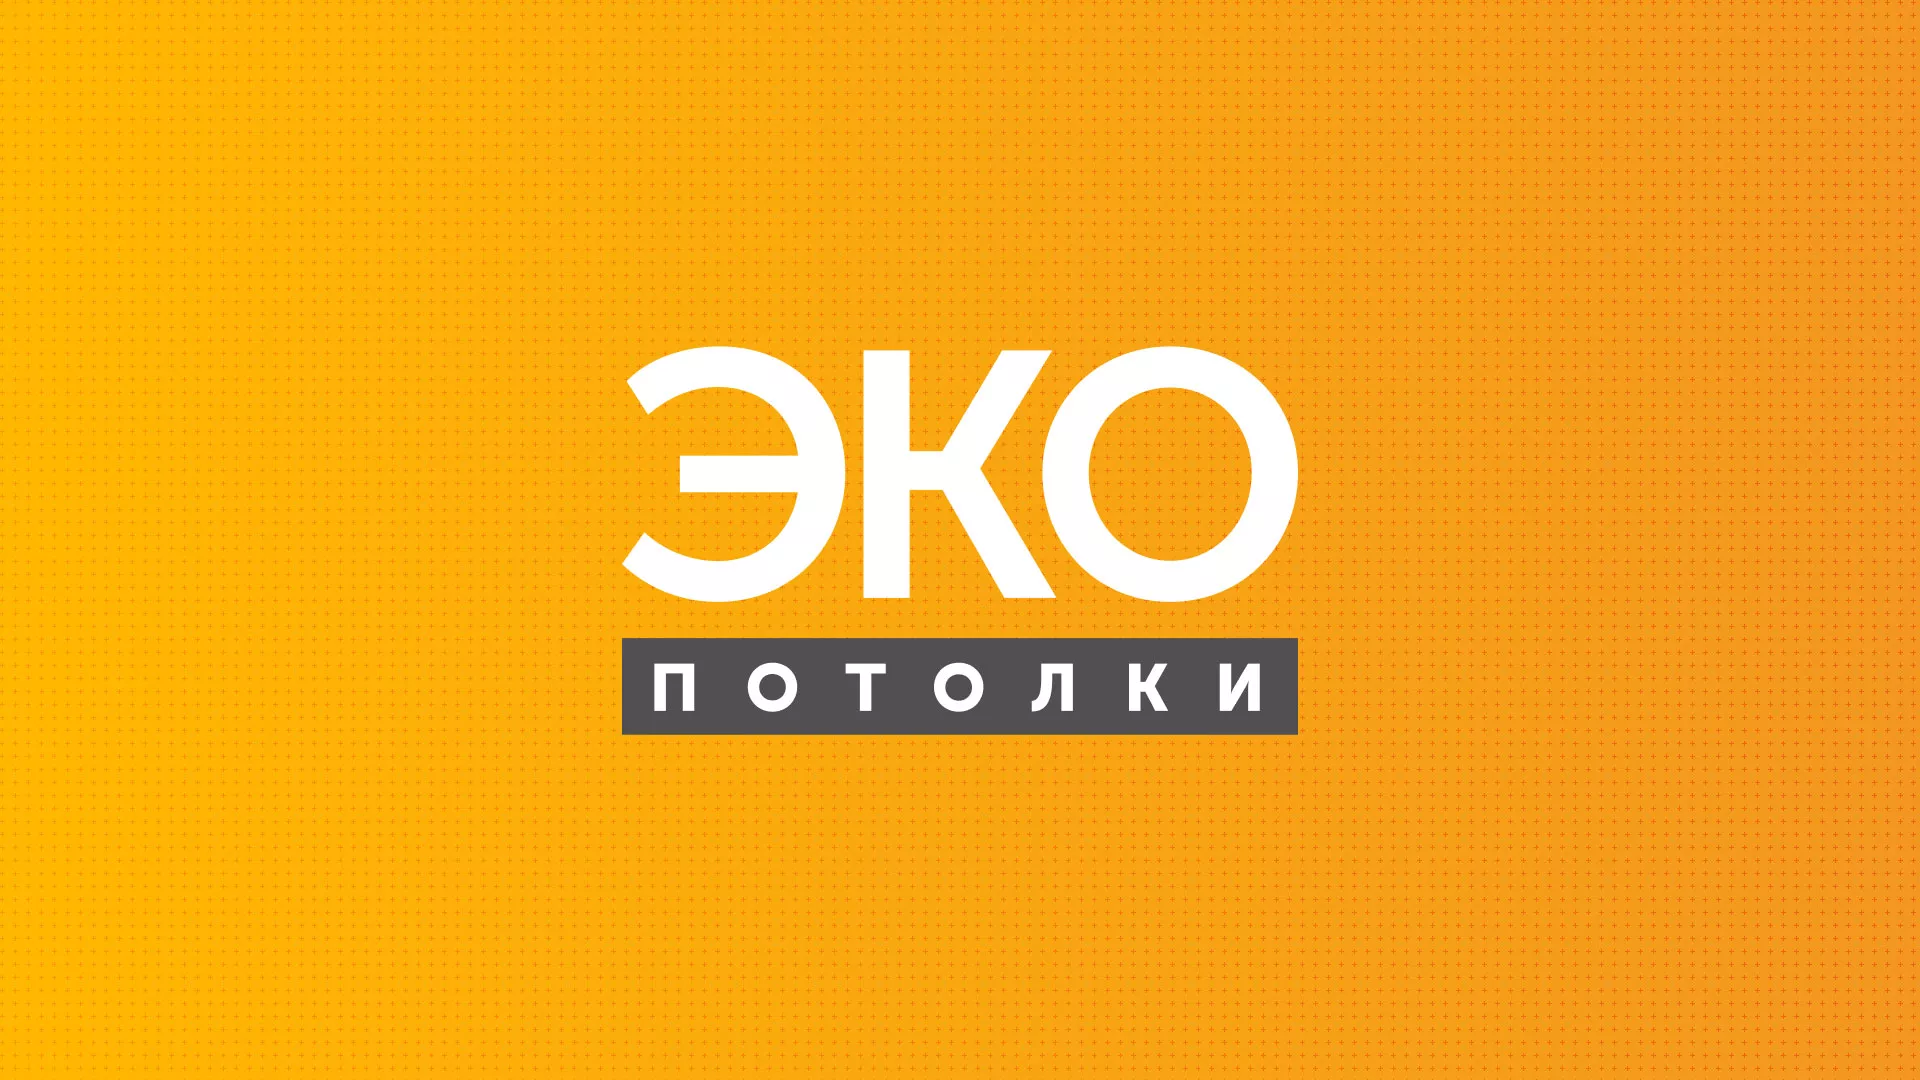 Разработка сайта по натяжным потолкам «Эко Потолки» в Среднеколымске